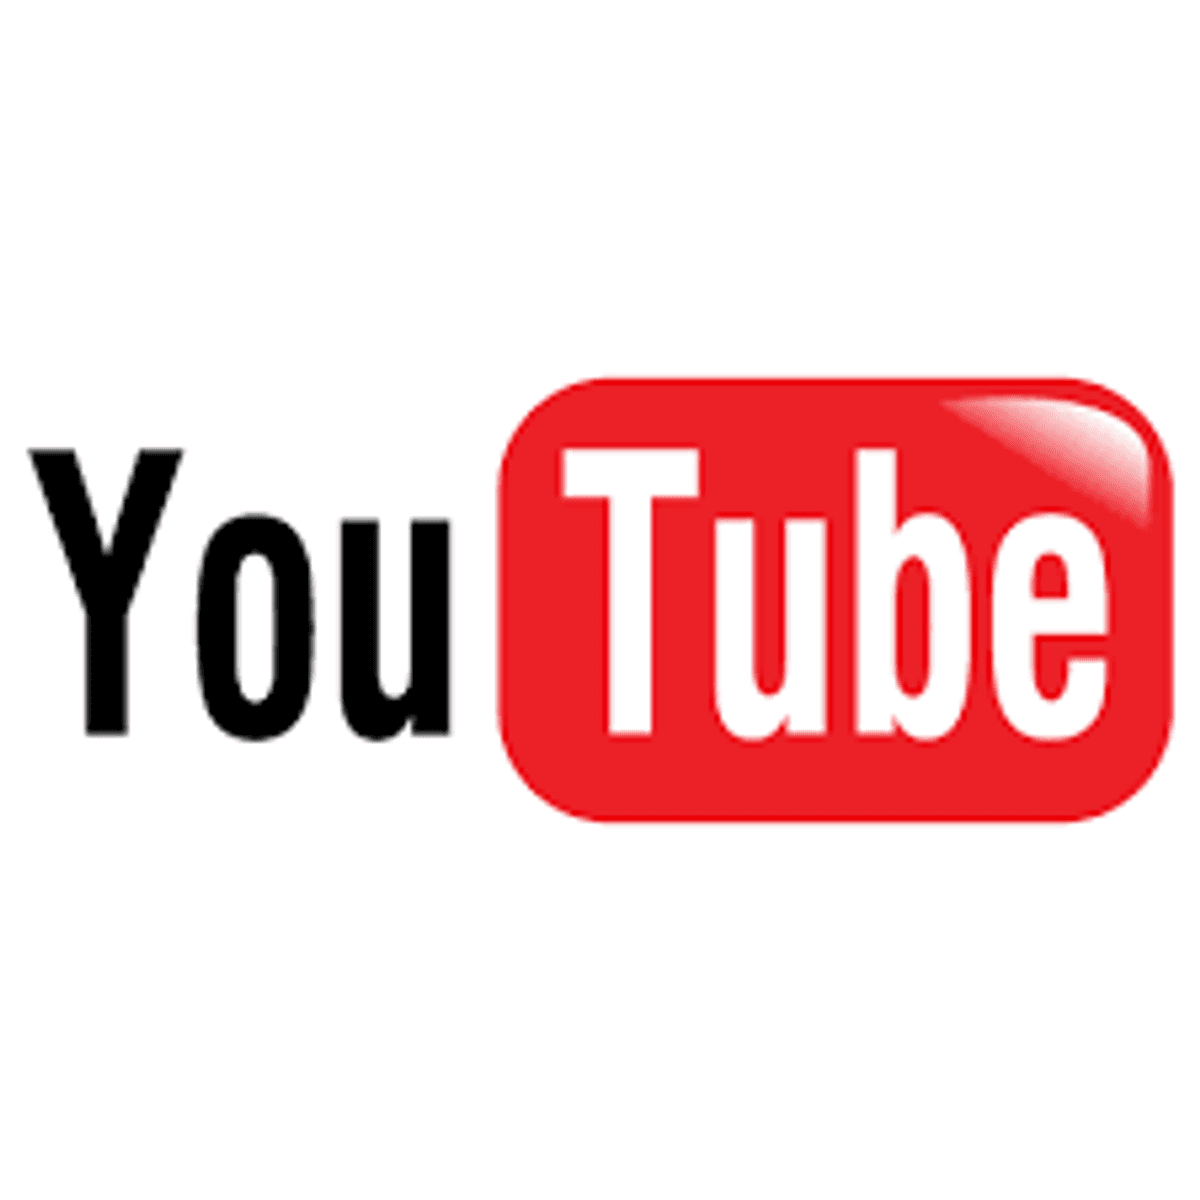 YouTube dreigt met verwijderen Deense muziek wegens licentiegeschil image